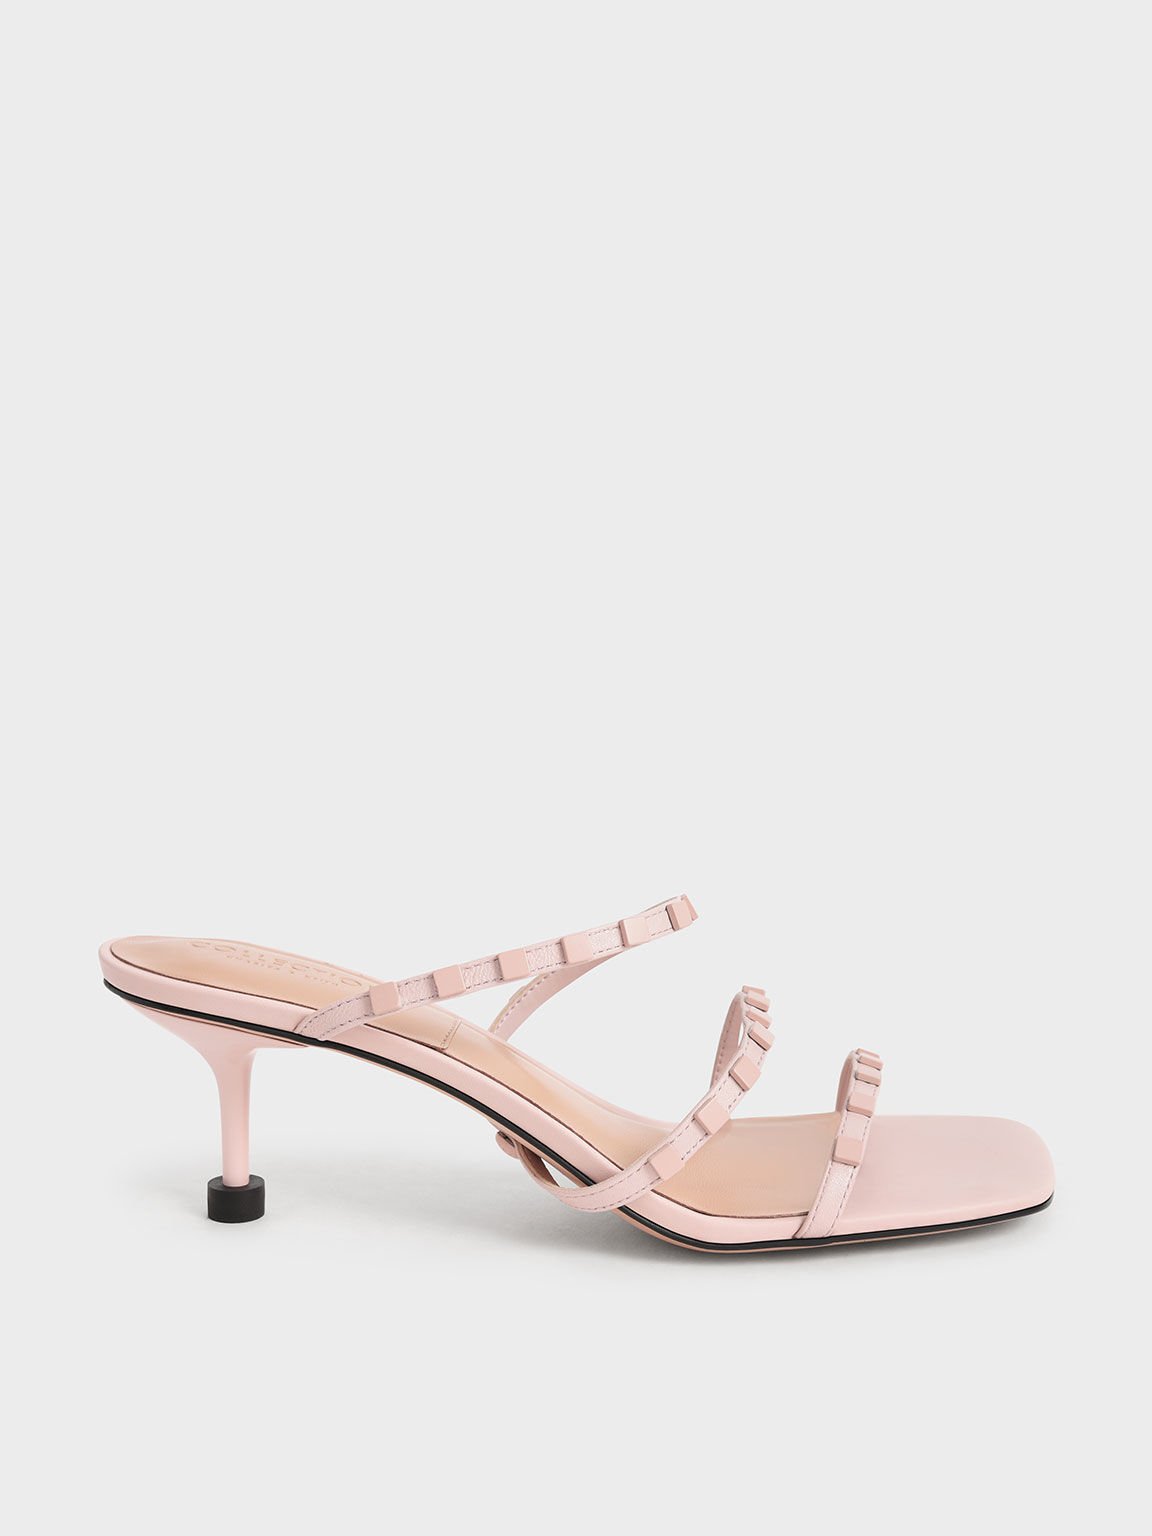 Leather Embellished Sculptural Heel Sandals, Pink, hi-res